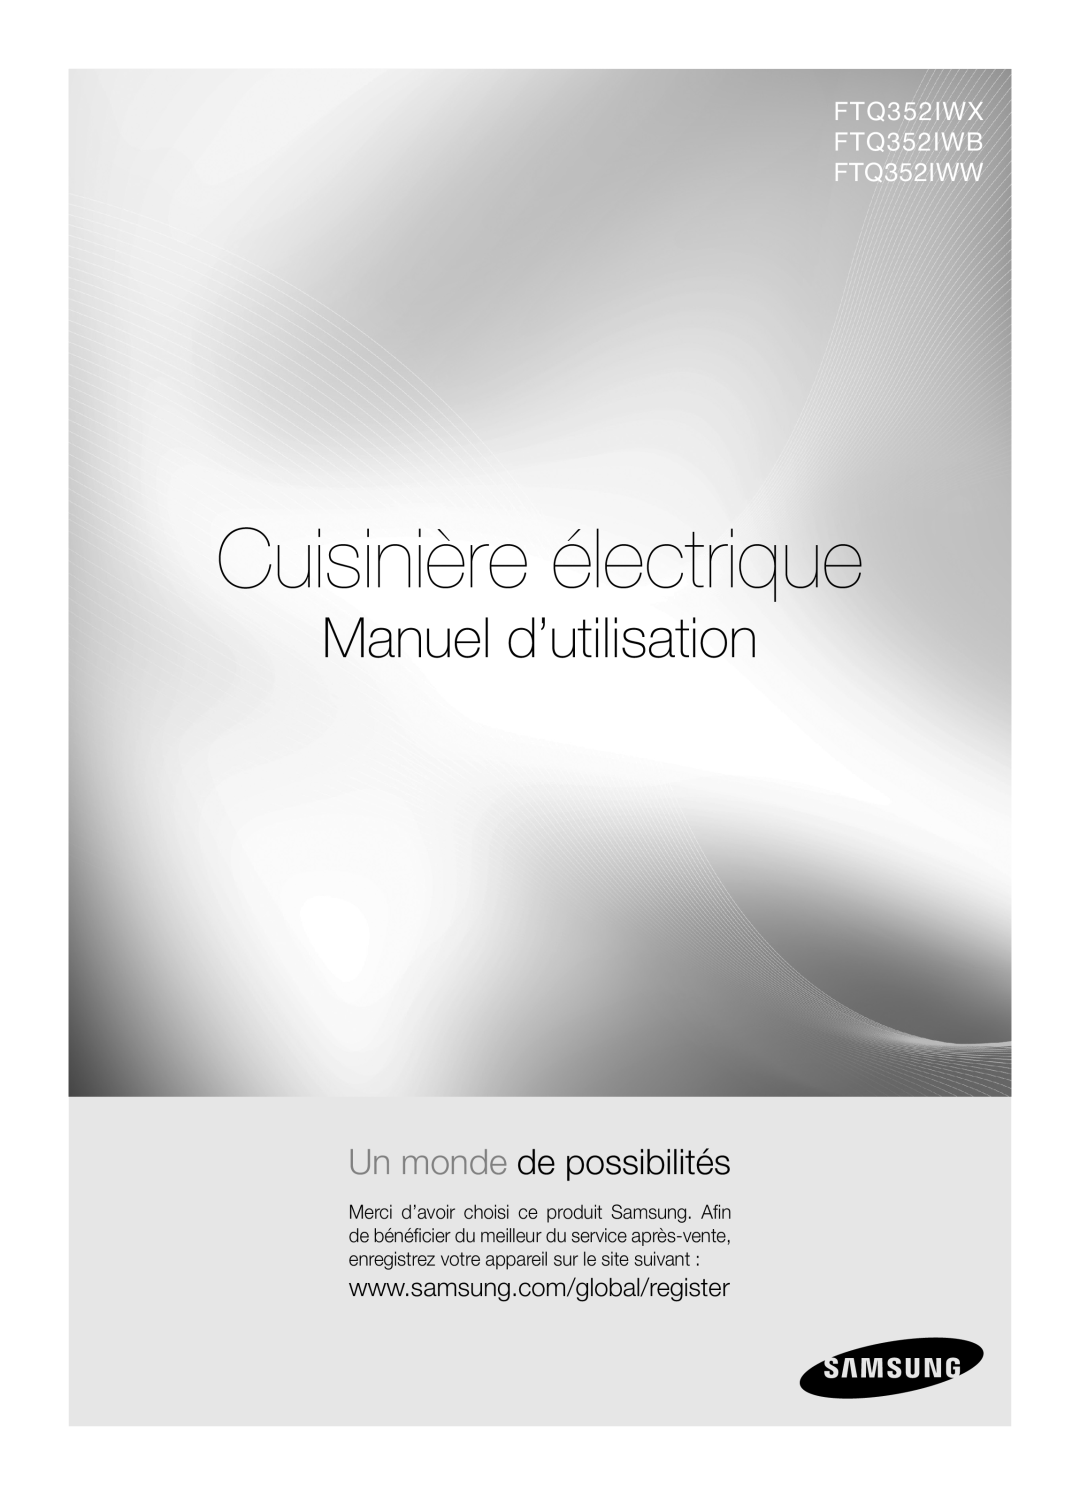 Samsung user manual Cuisinière électrique, Manuel d’utilisation, Un monde de possibilités, FTQ352IWX FTQ352IWB FTQ352IWW 